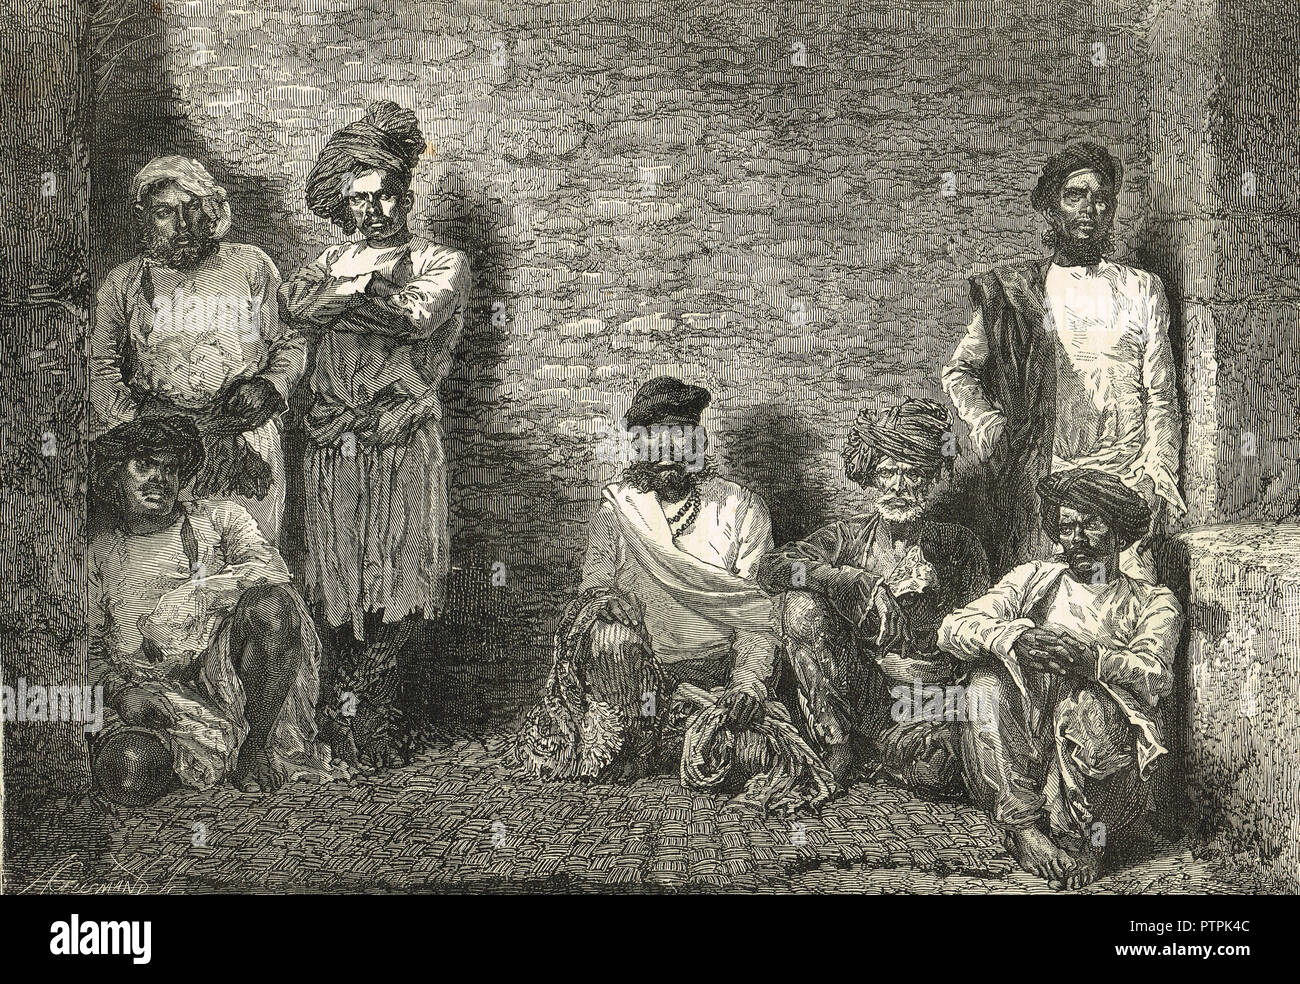 Teppisti, Thuggee, tuggee in prigione, Aurangabad, Maharashtra, India, circa 1830. Organizzato la pista professionale di ladri e assassini, soppressa dal i governanti inglesi dell India Foto Stock